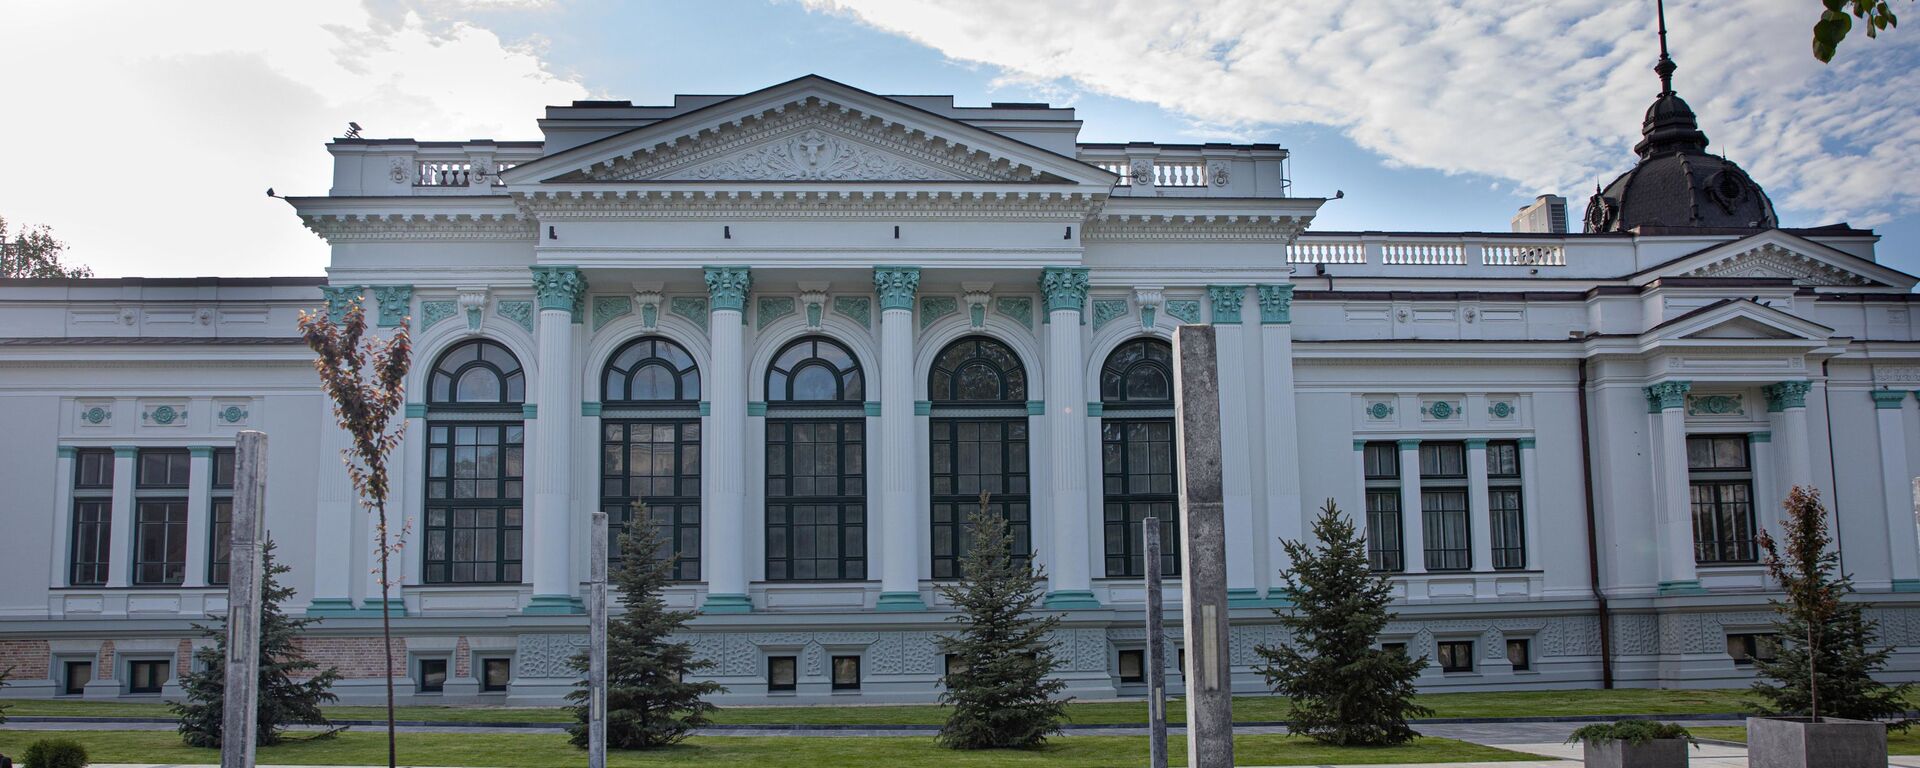 Кишинев. Бывшее здание городского банка. Сегодня - Органный зал - Sputnik Молдова, 1920, 23.05.2021